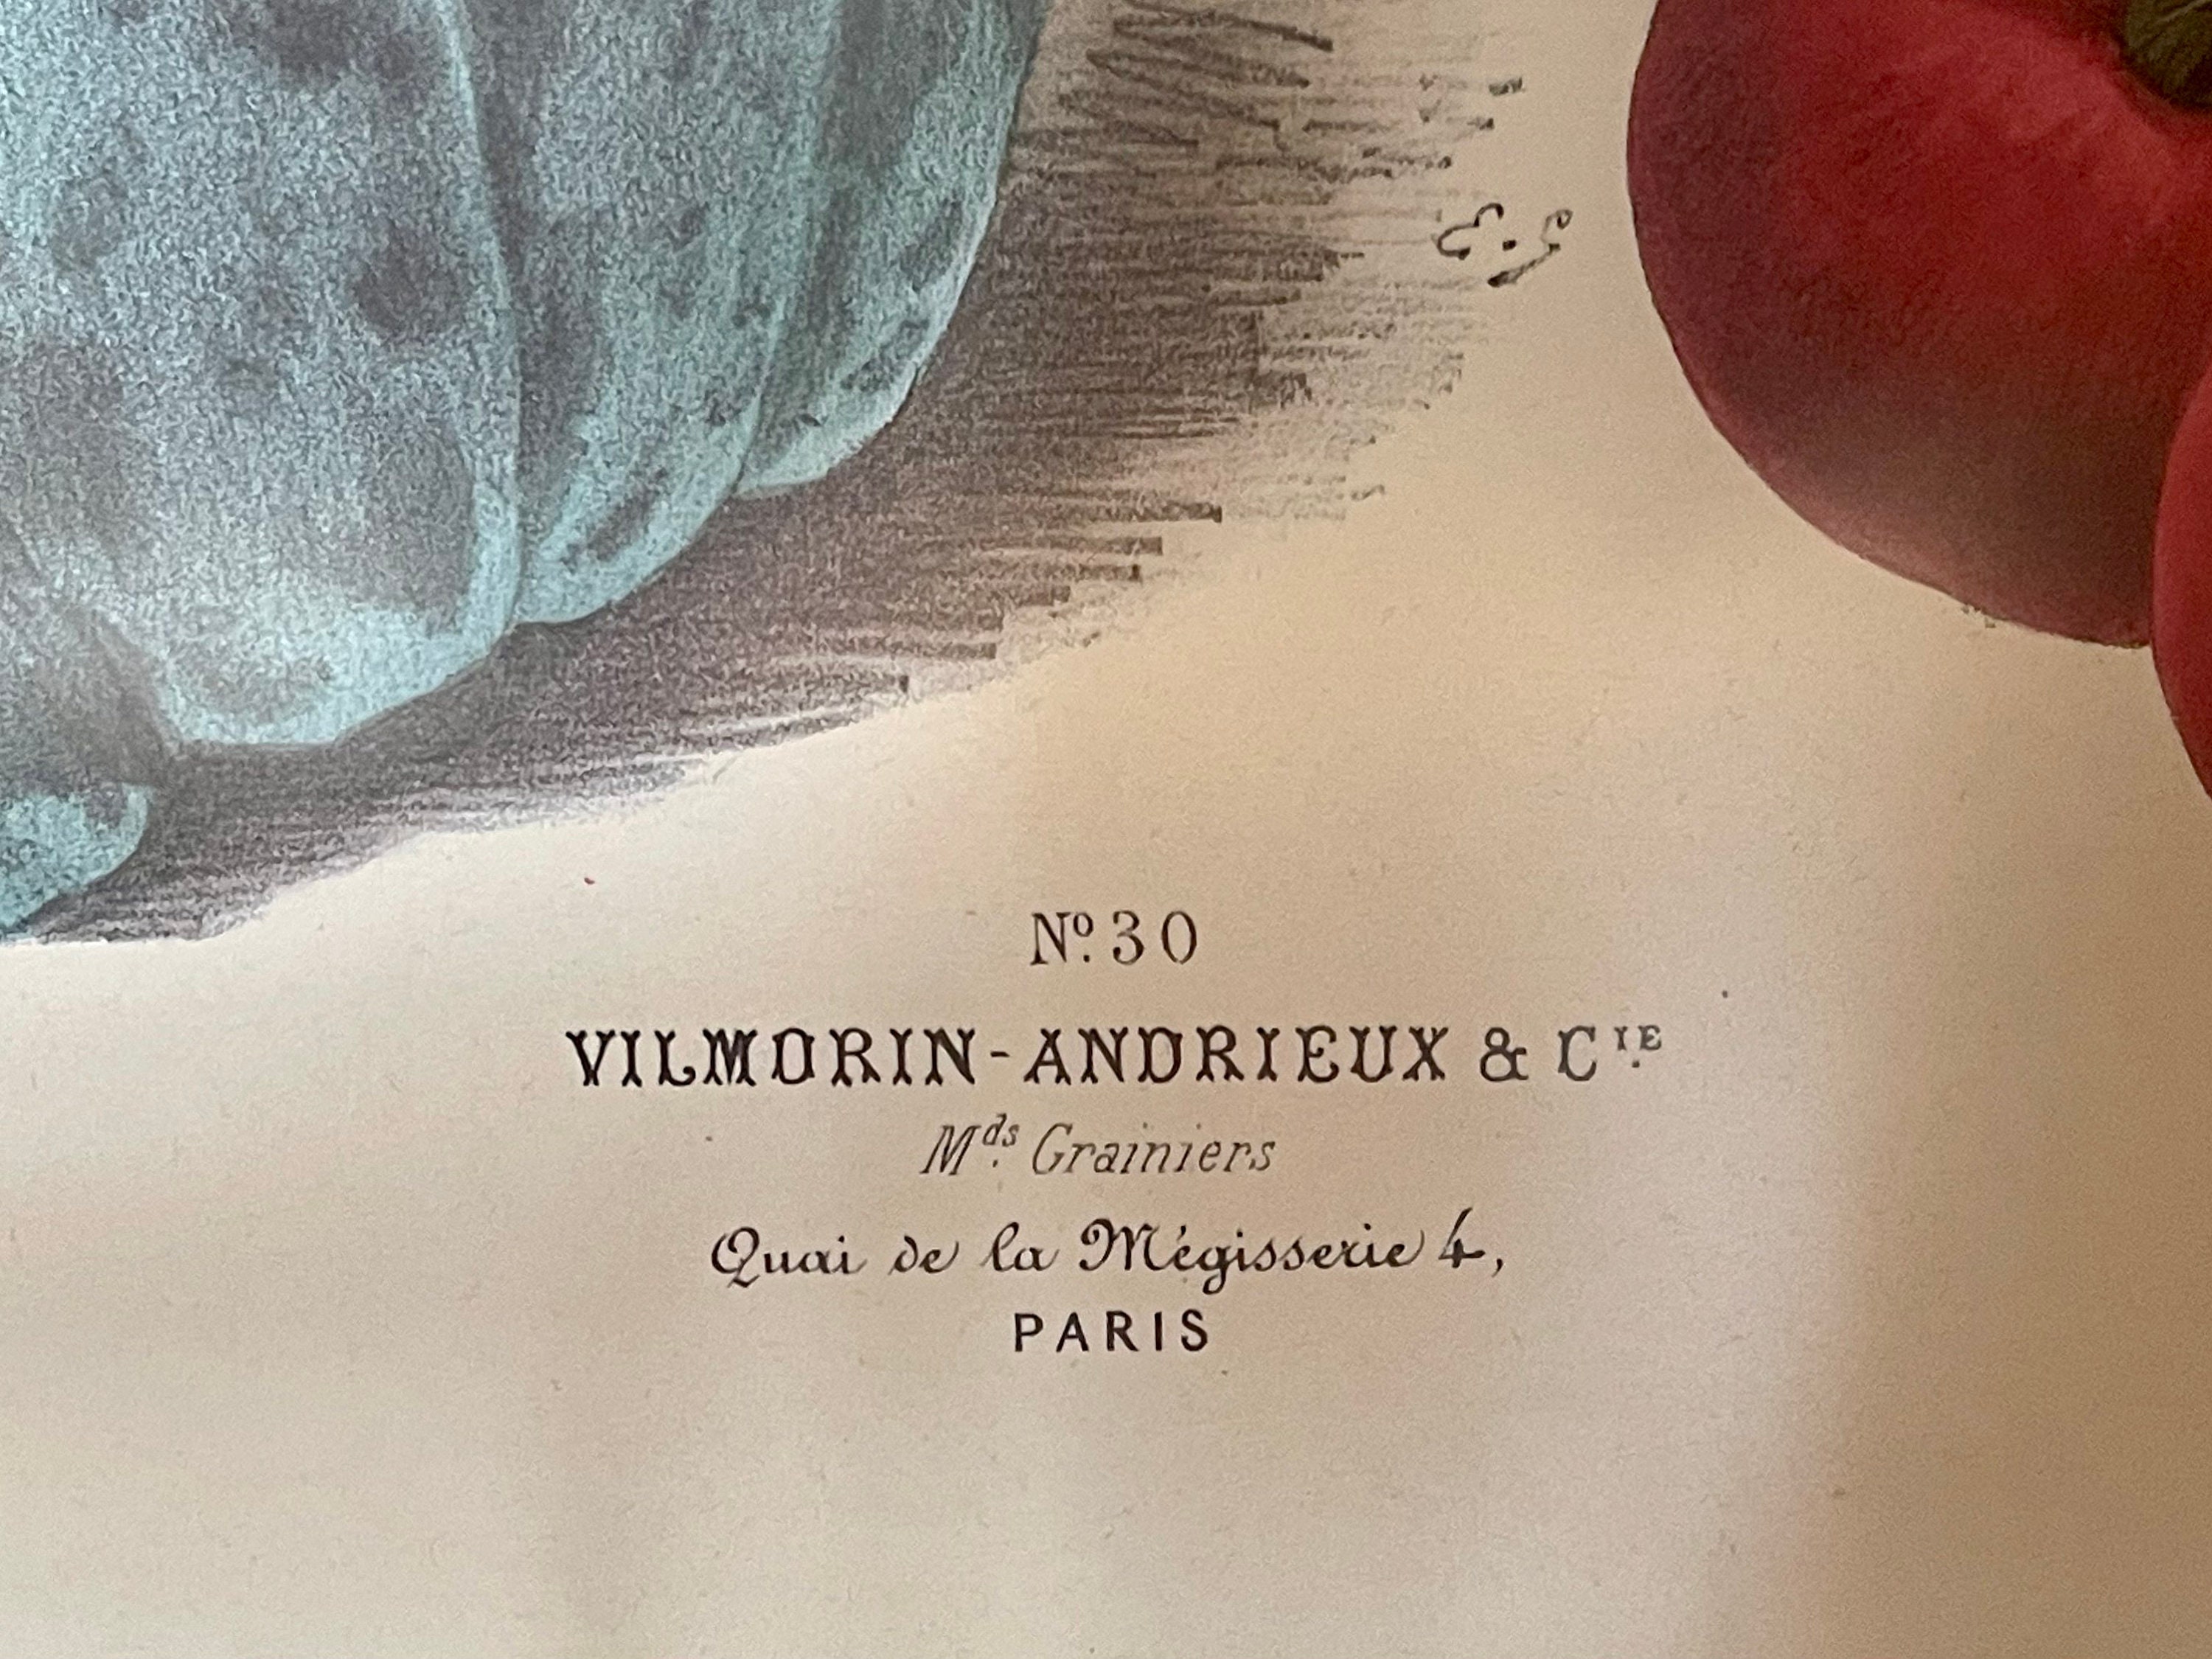 Vegetables Illustration Vintage Print 3 - Vilmorin (VP1087